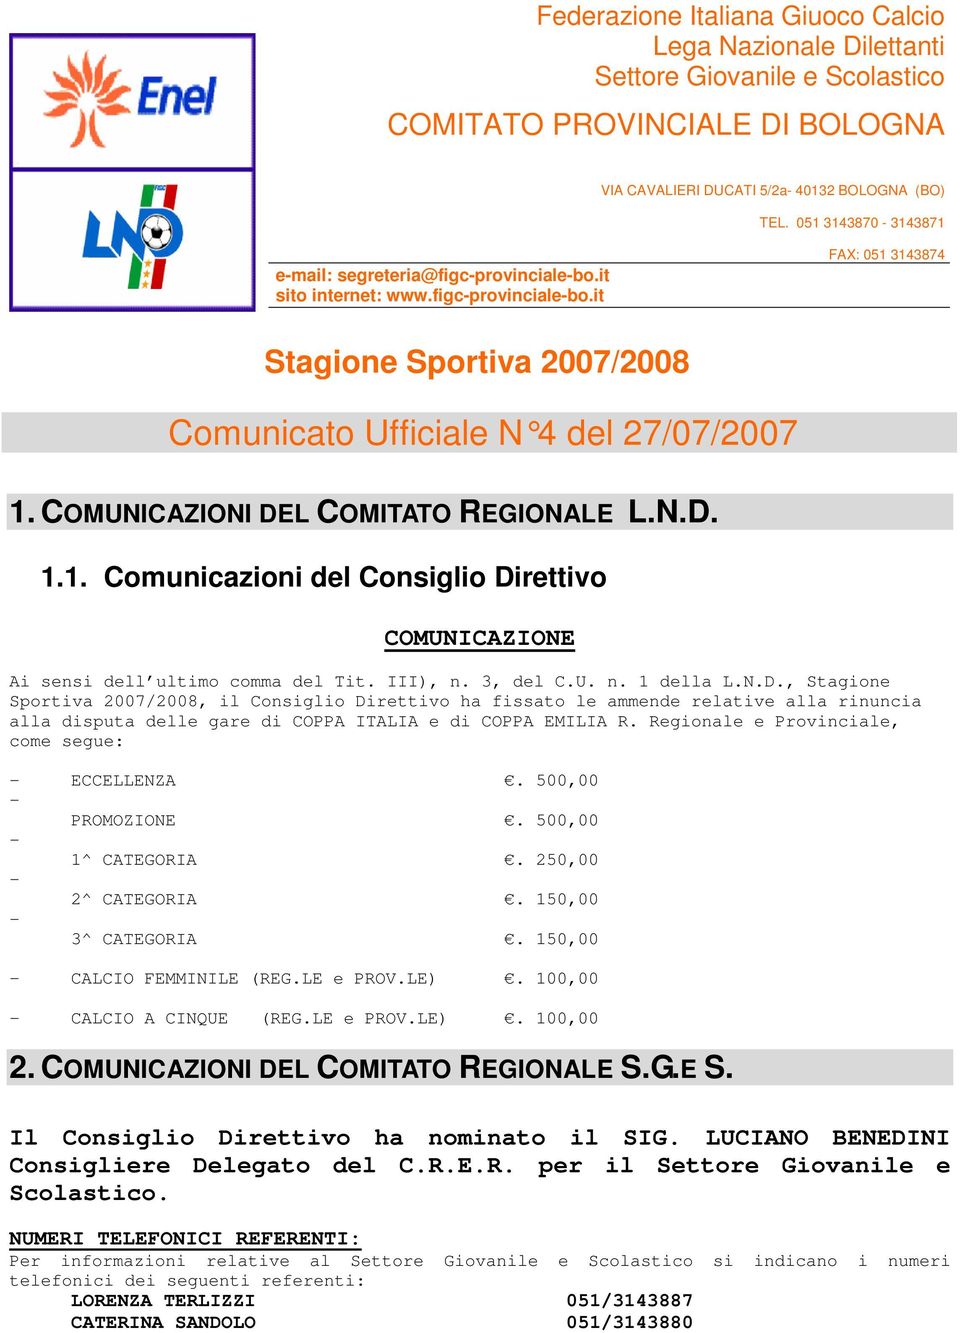 COMUNICAZIONI DEL COMITATO REGIONALE L.N.D. 1.1. Comunicazioni del Consiglio Direttivo COMUNICAZIONE Ai sensi dell ultimo comma del Tit. III), n. 3, del C.U. n. 1 della L.N.D., Stagione Sportiva 2007/2008, il Consiglio Direttivo ha fissato le ammende relative alla rinuncia alla disputa delle gare di COPPA ITALIA e di COPPA EMILIA R.